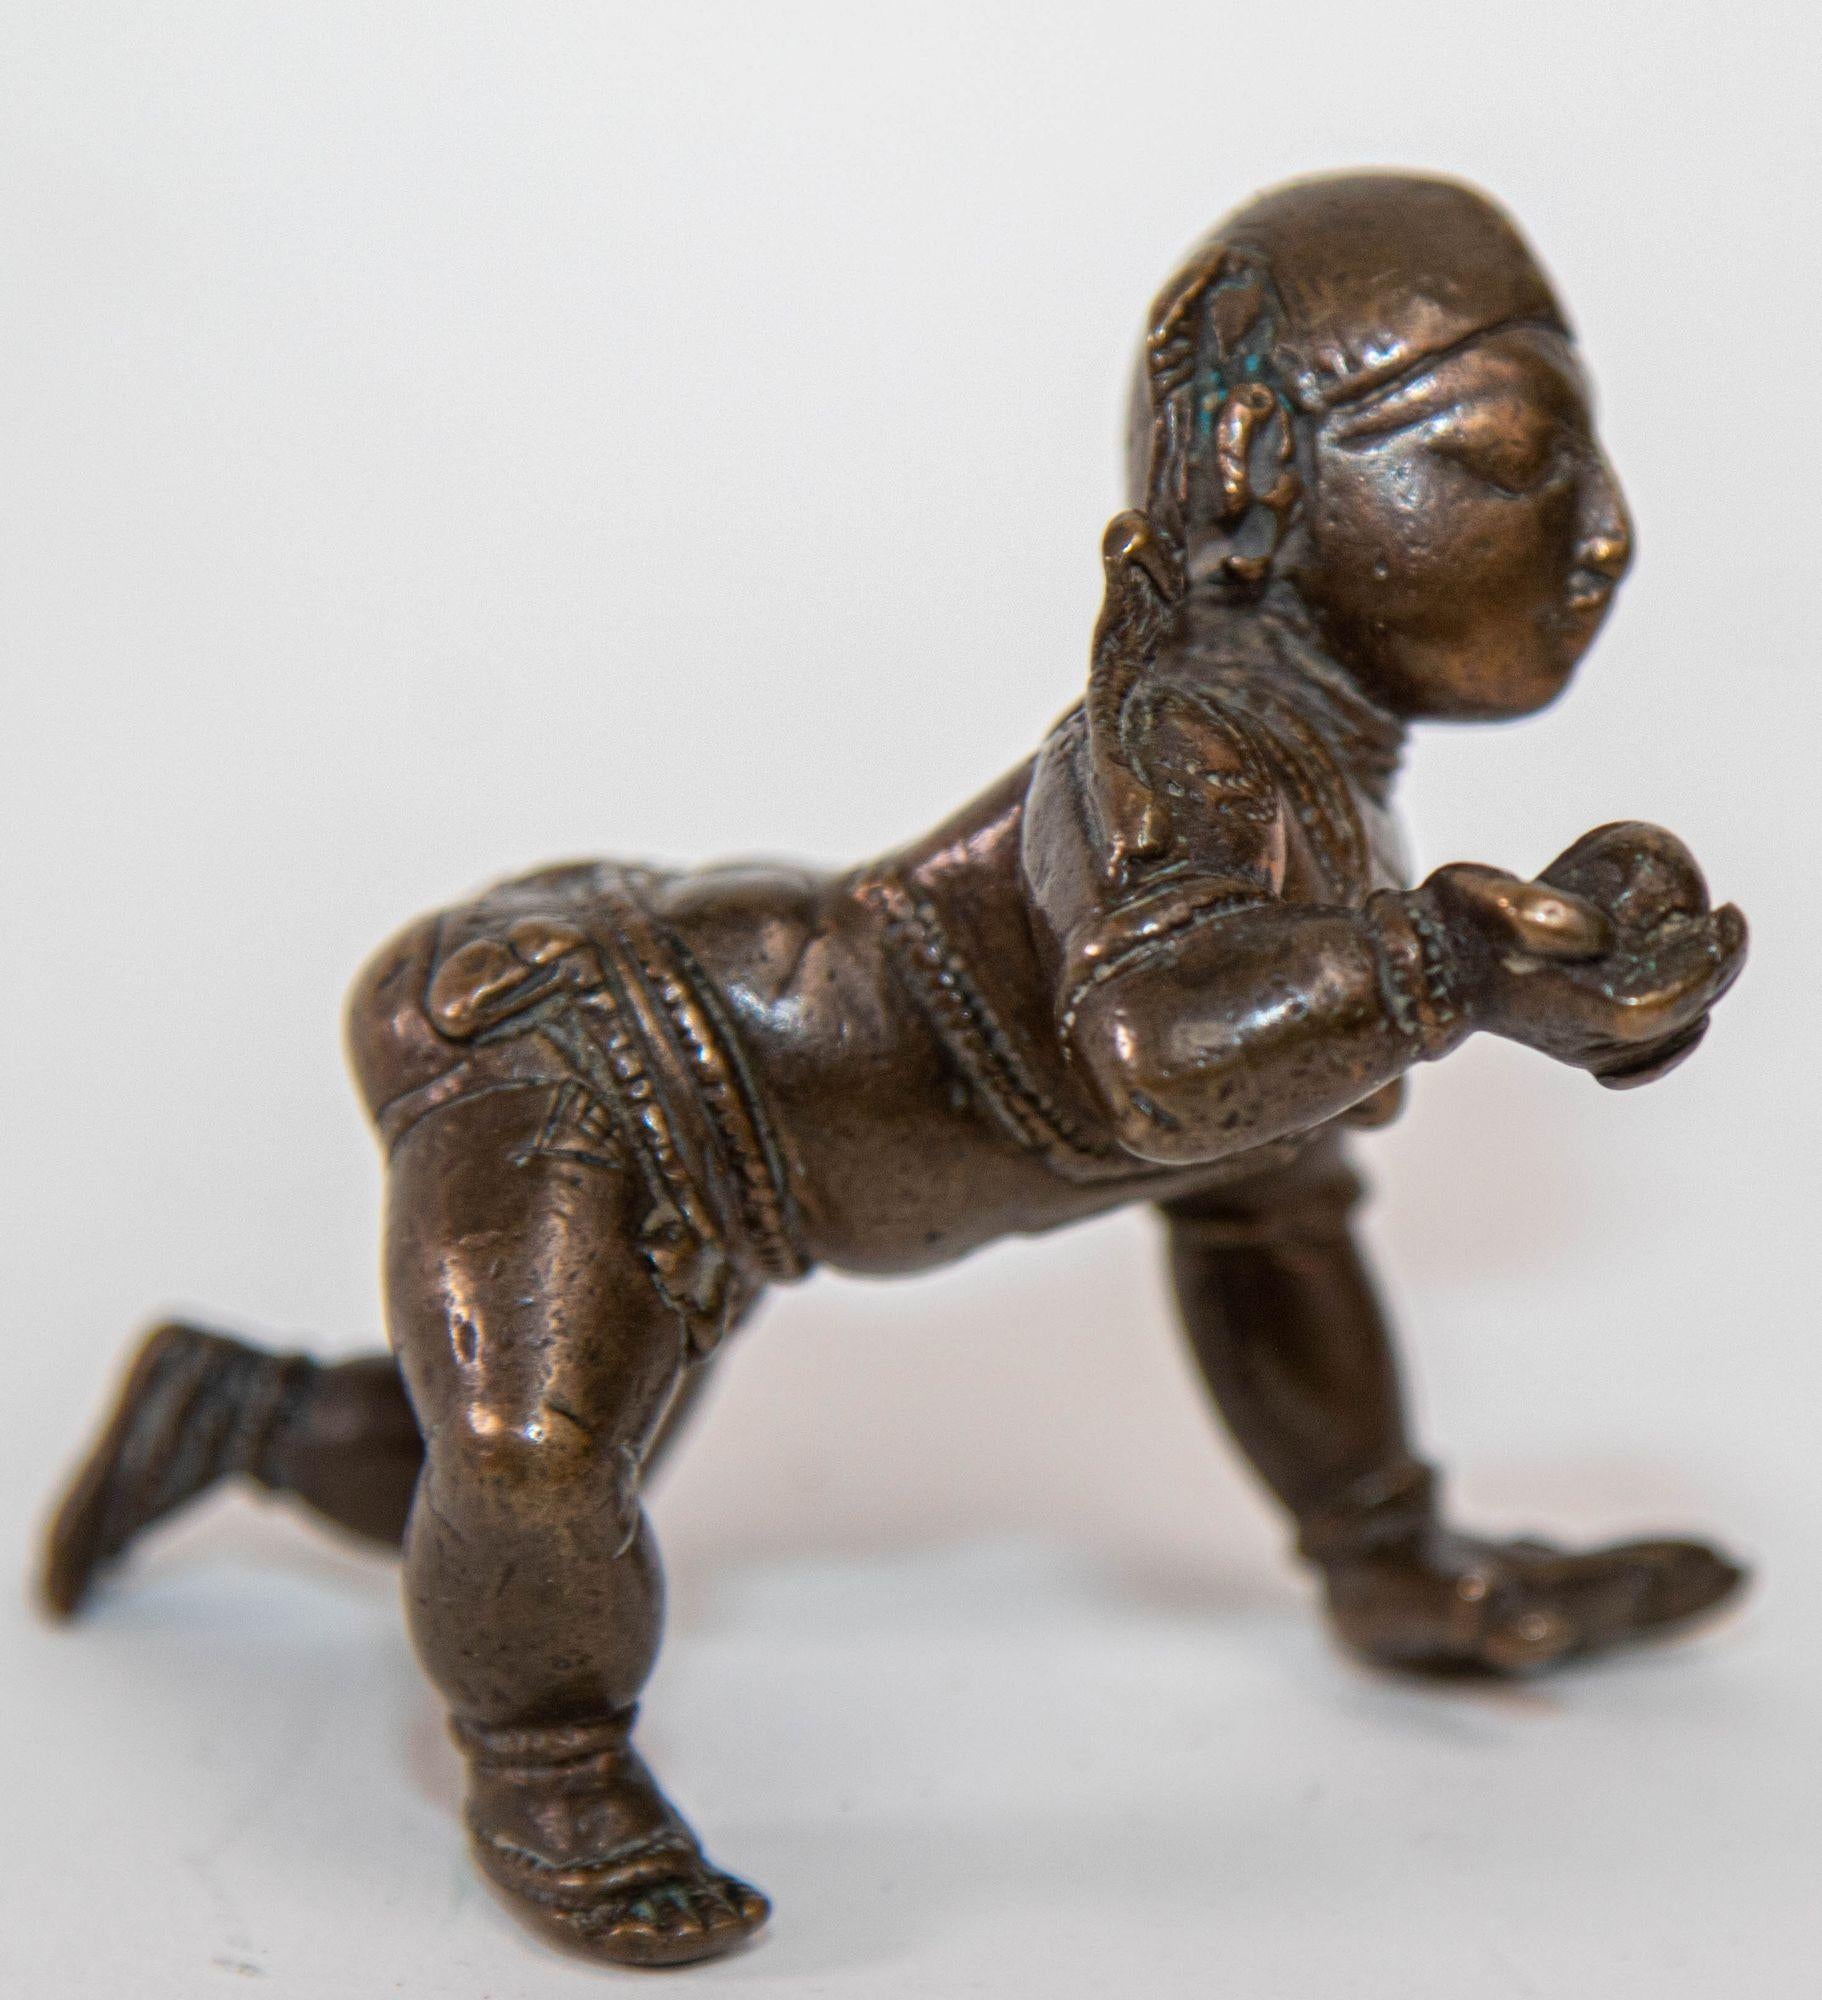 Antike Bronzefigur von Baby Bala Krishna krabbelnde Figur hält die Perle der Weisheit oder Butterball.

Eine indische Bronzefigur von Balakrishna, dem kleinen Krishna, der Ketten um seine Taille und eine Halskette trägt, sein Gesicht mit einem